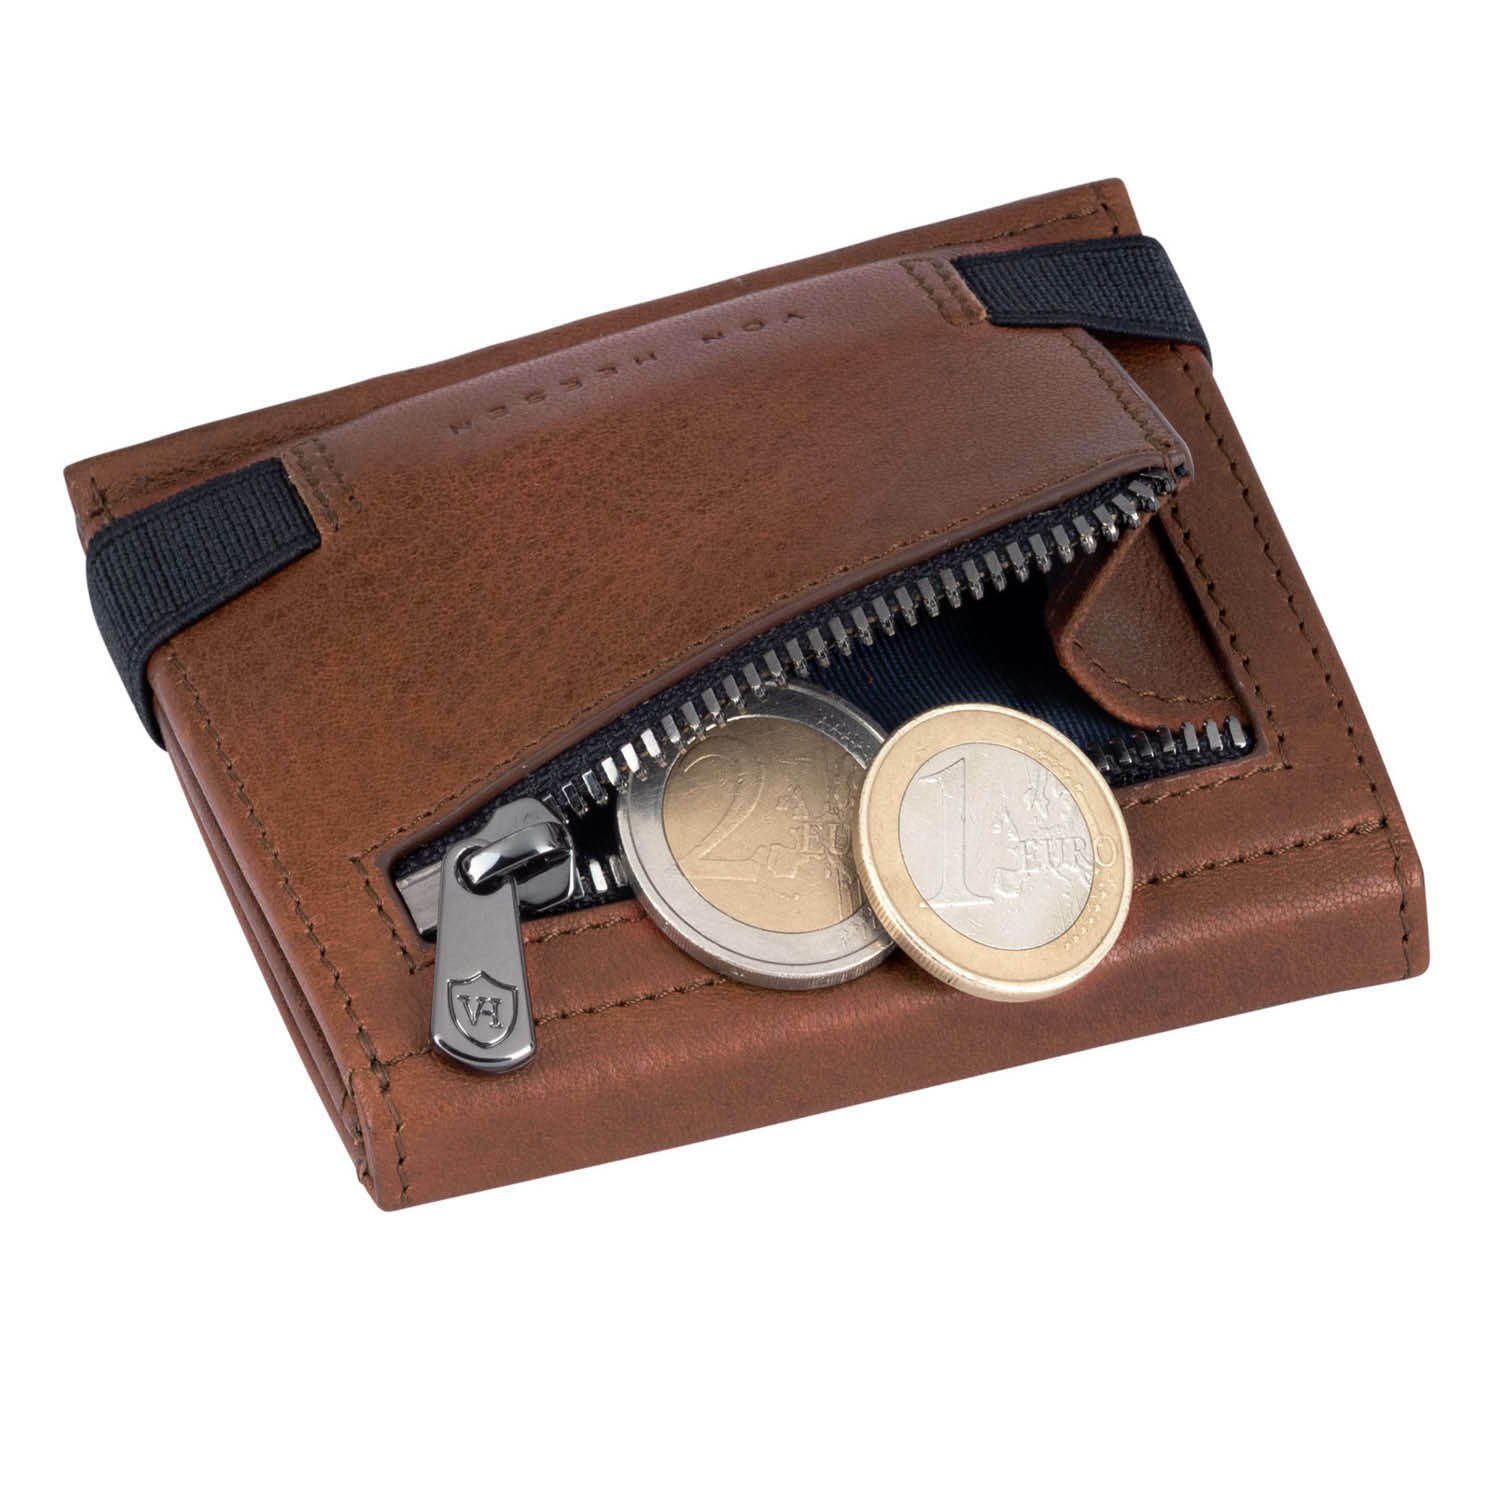 VON HEESEN Geldbörse Whizz Wallet Geldbeutel inkl. Geschenkbox Cognac-Braun Wallet & & RFID-Schutz Mini-Münzfach, Kartenfächer mit Portemonnaie Slim 5